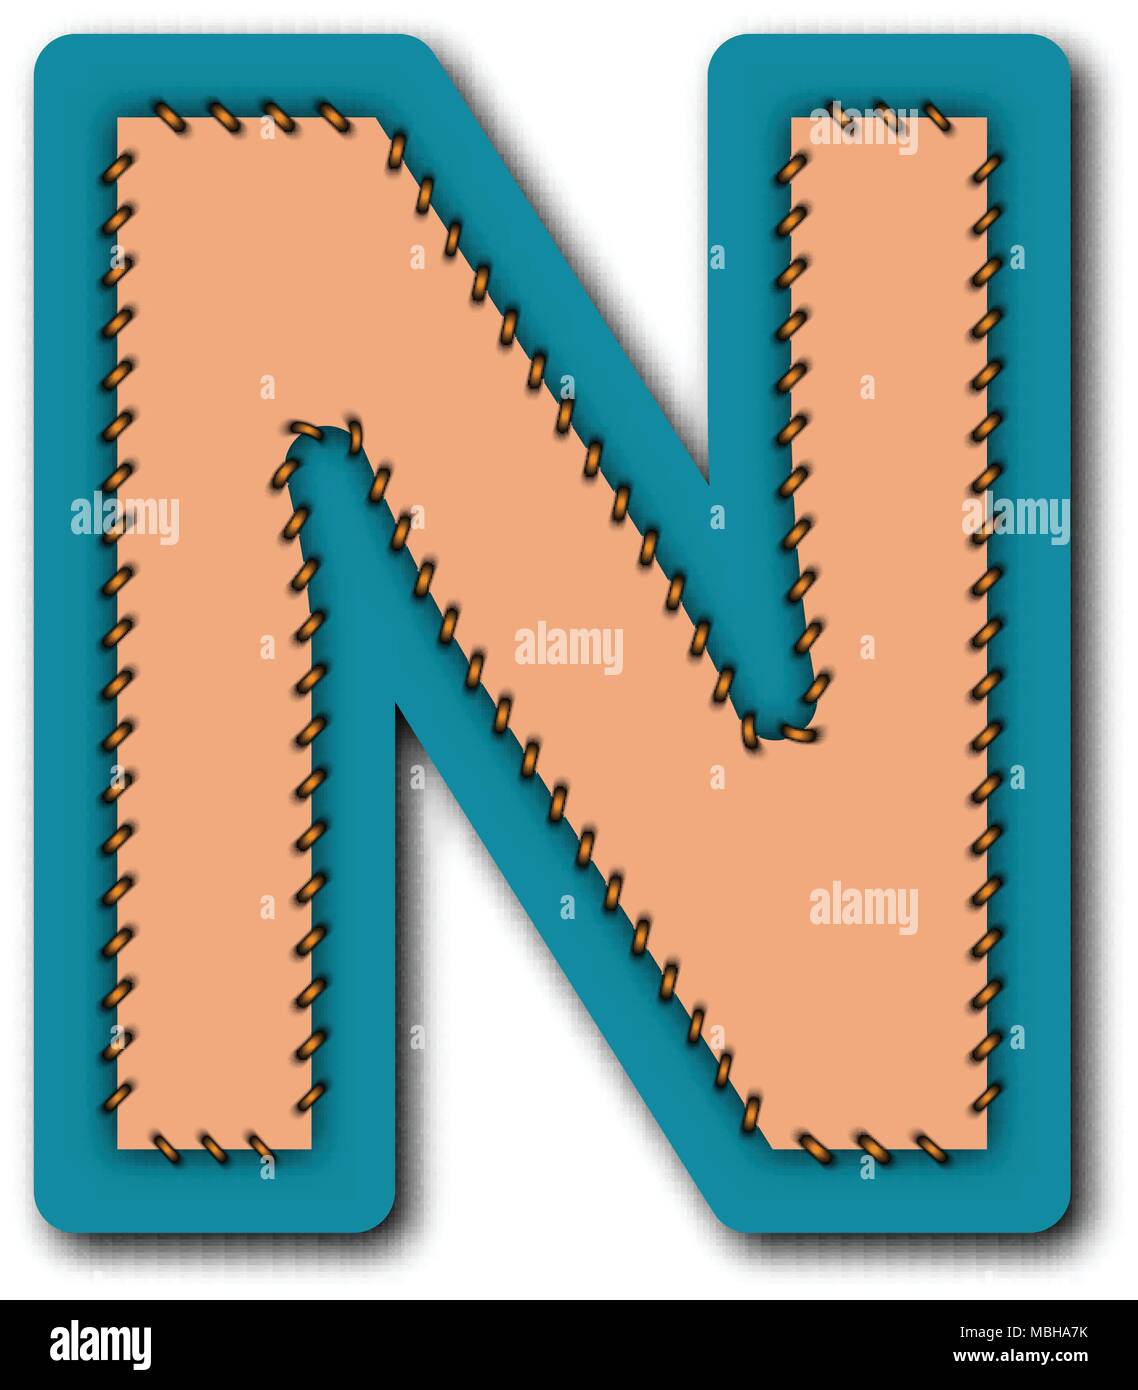 N de l'alphabet brodé charactor de patch work concept pour la conception graphique de vecteur idée Illustration de Vecteur